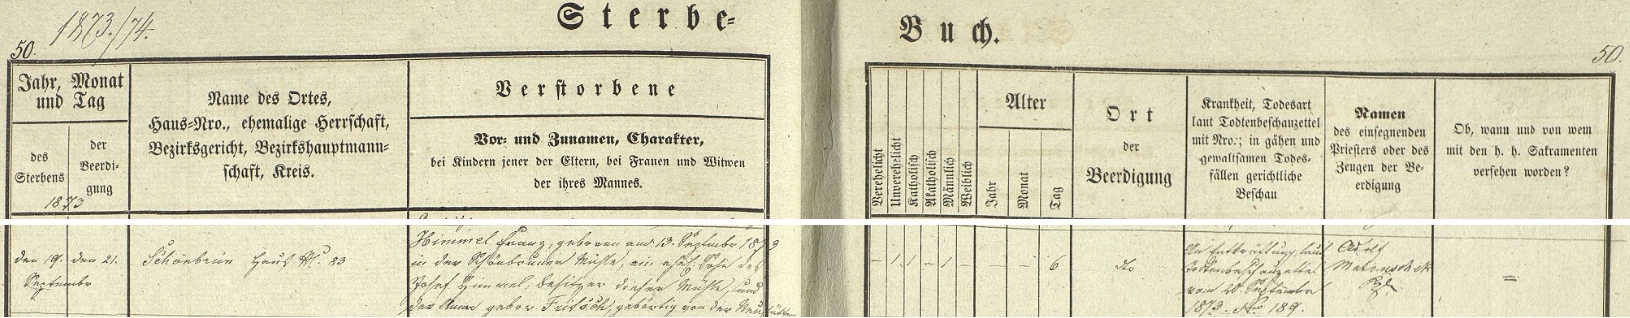 Záznam úmrtní matriky někdejší obce Studánka o úmrtí jejího dědečka Franze Himmela